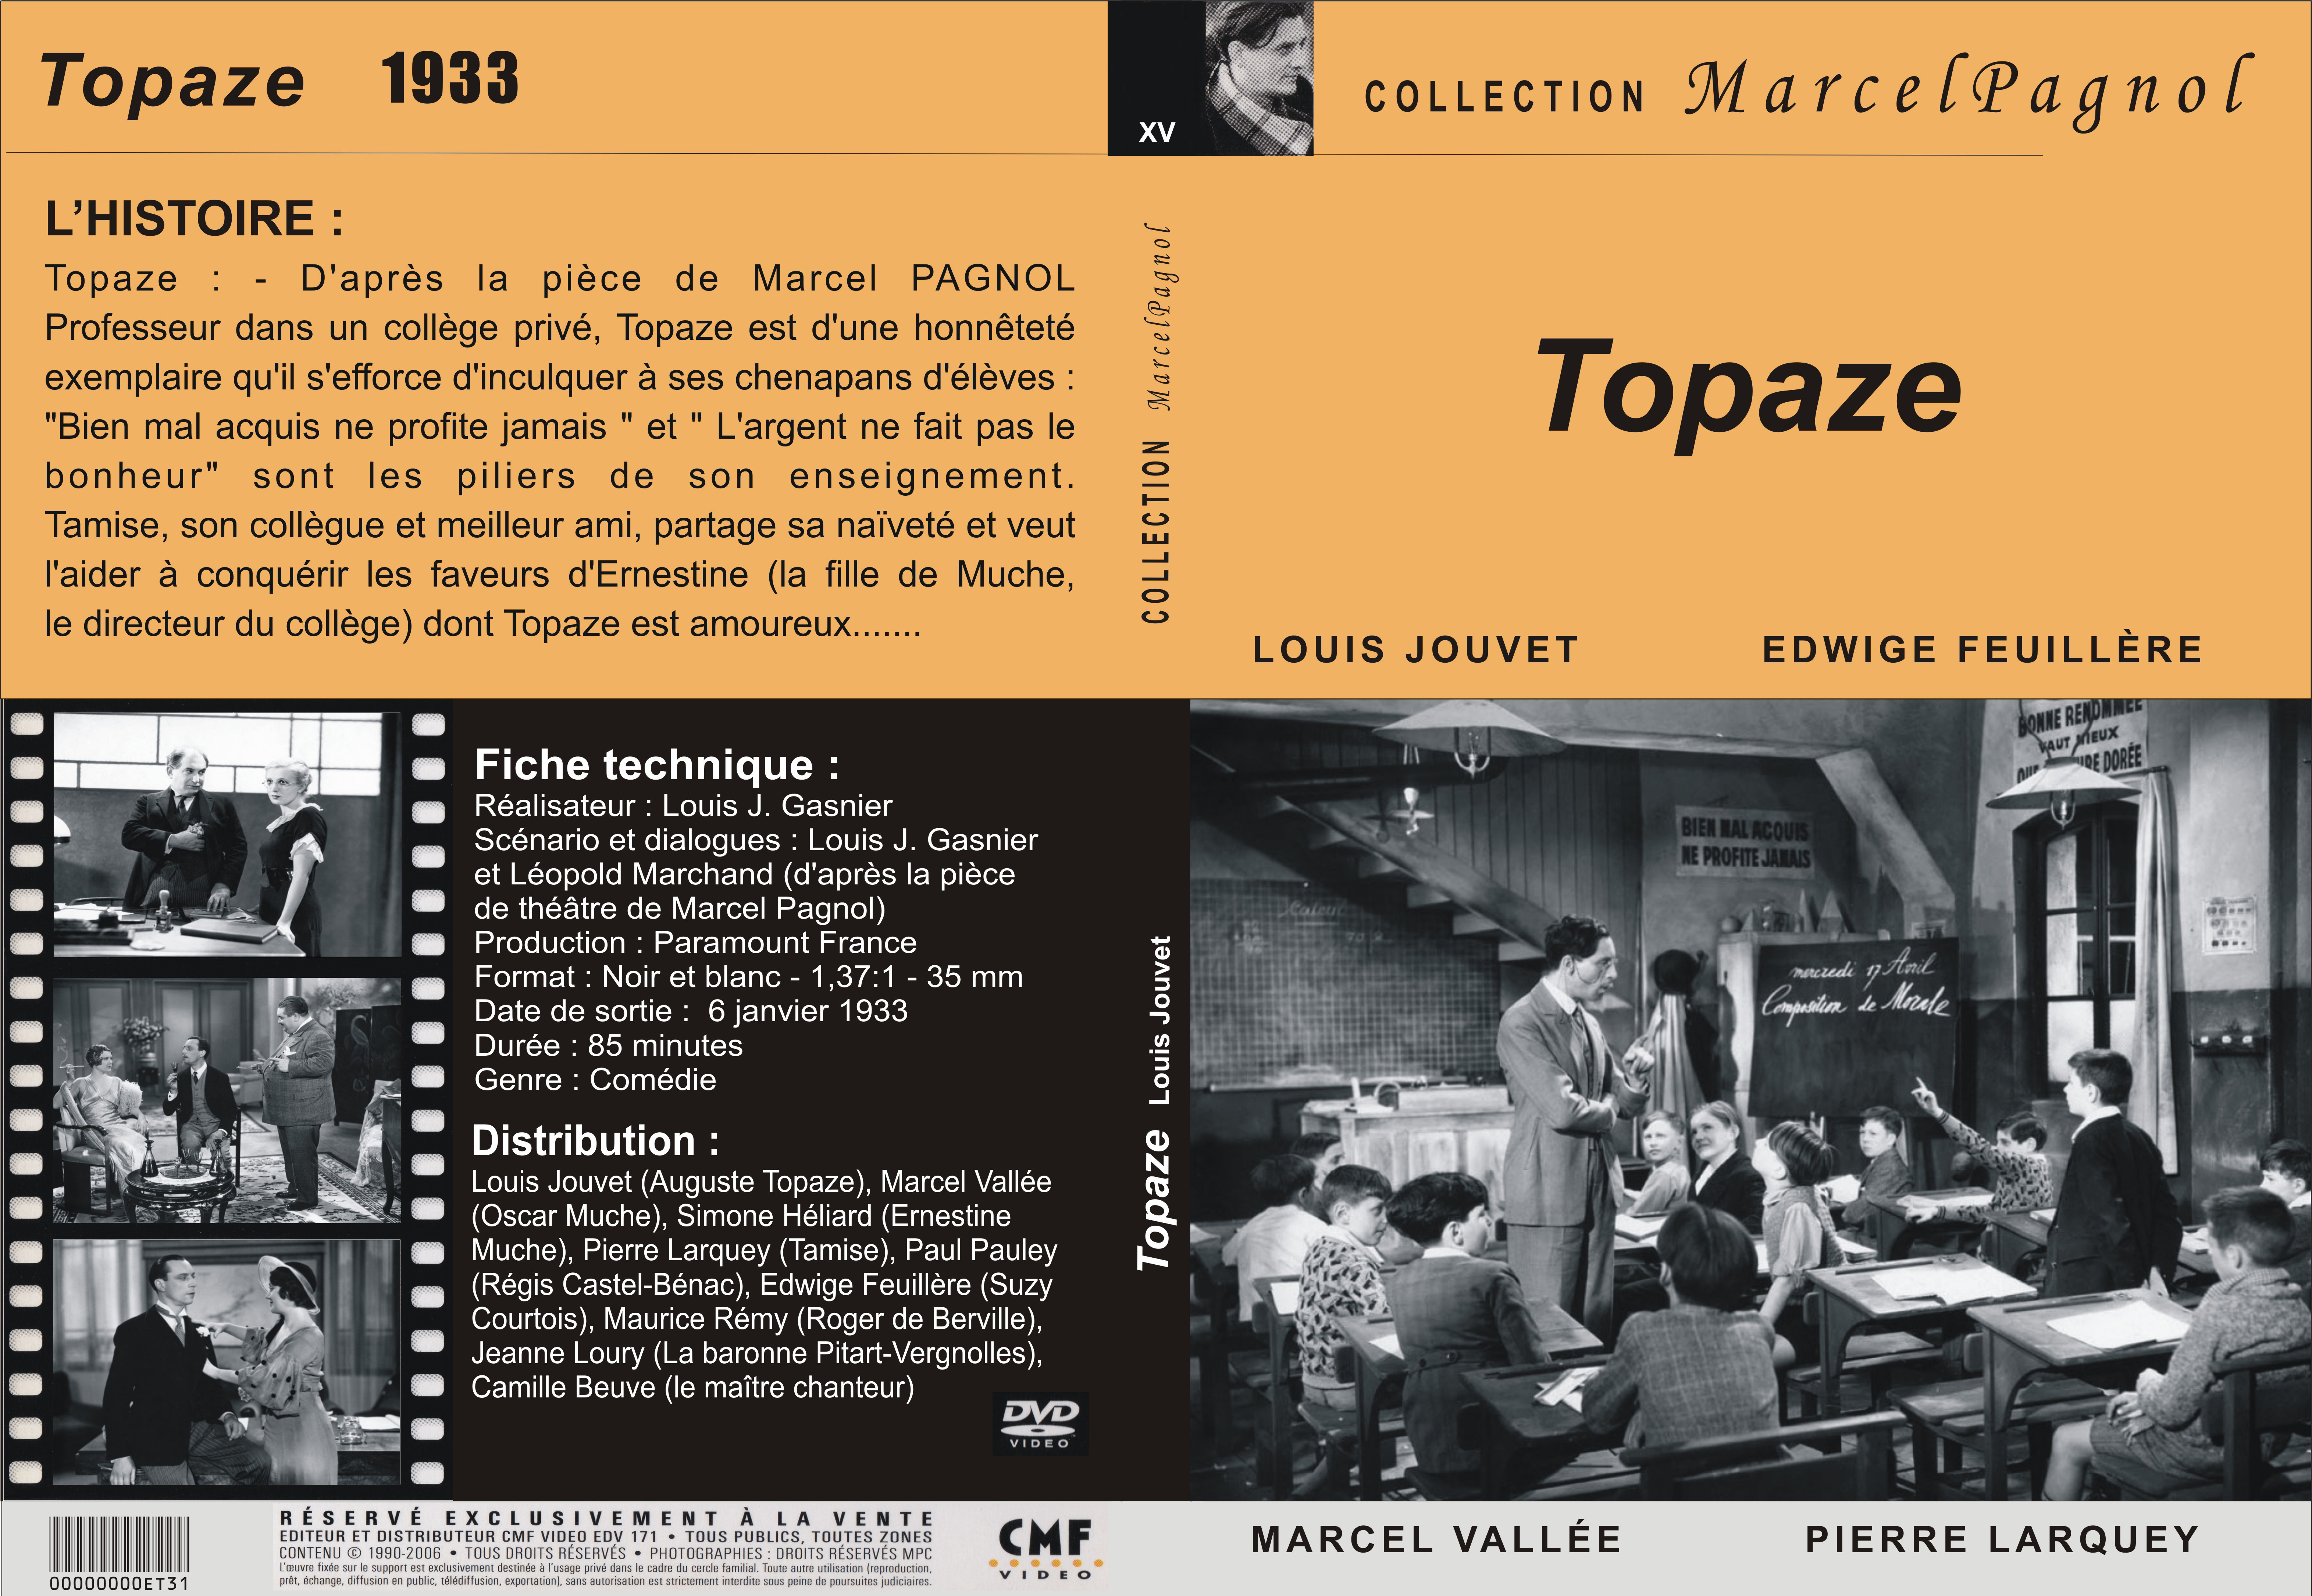 Jaquette DVD Topaze (1933) custom